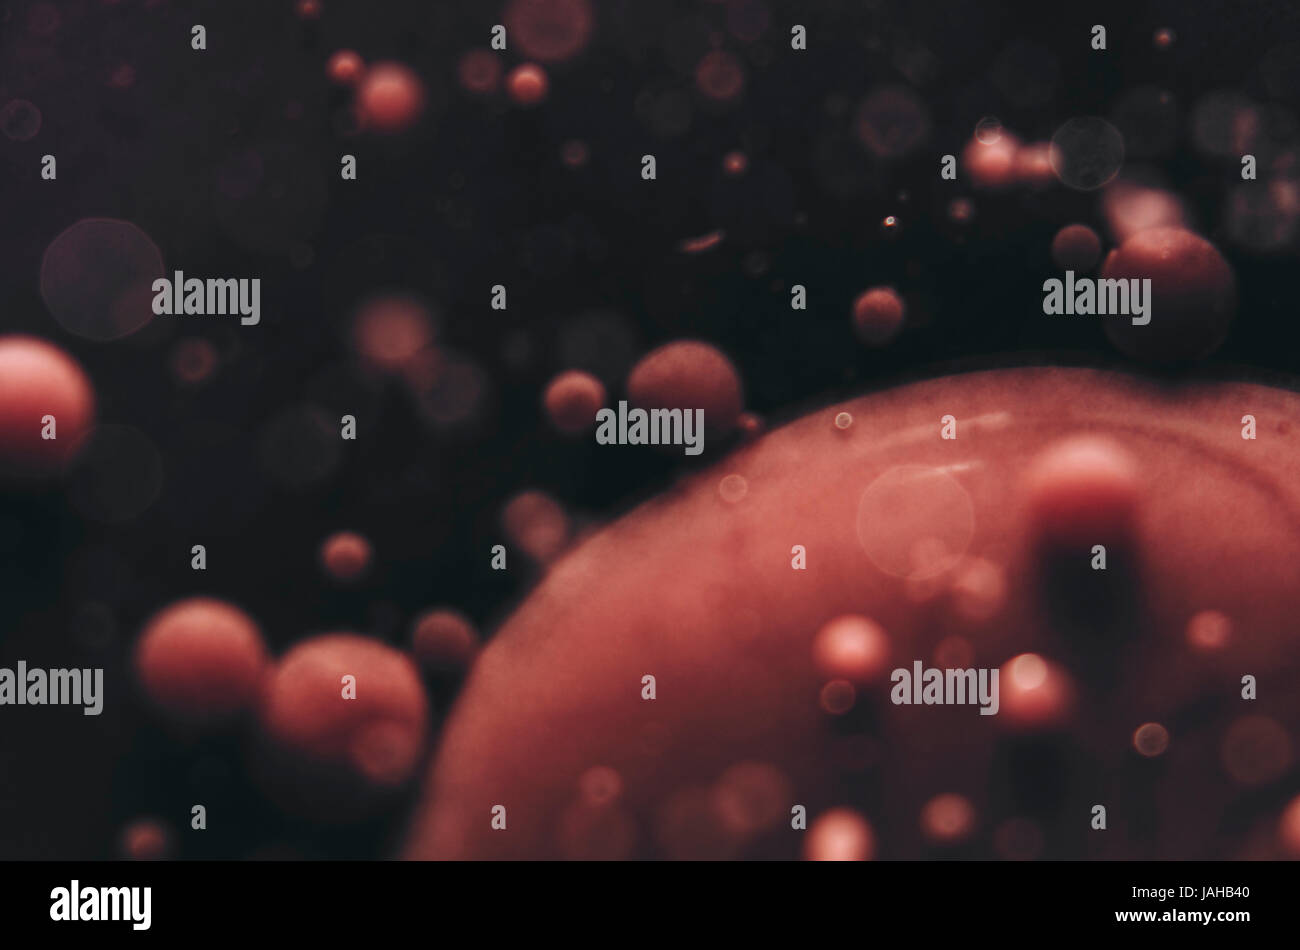 Abstract concept créatif de cellules sanguines fond sombre Banque D'Images